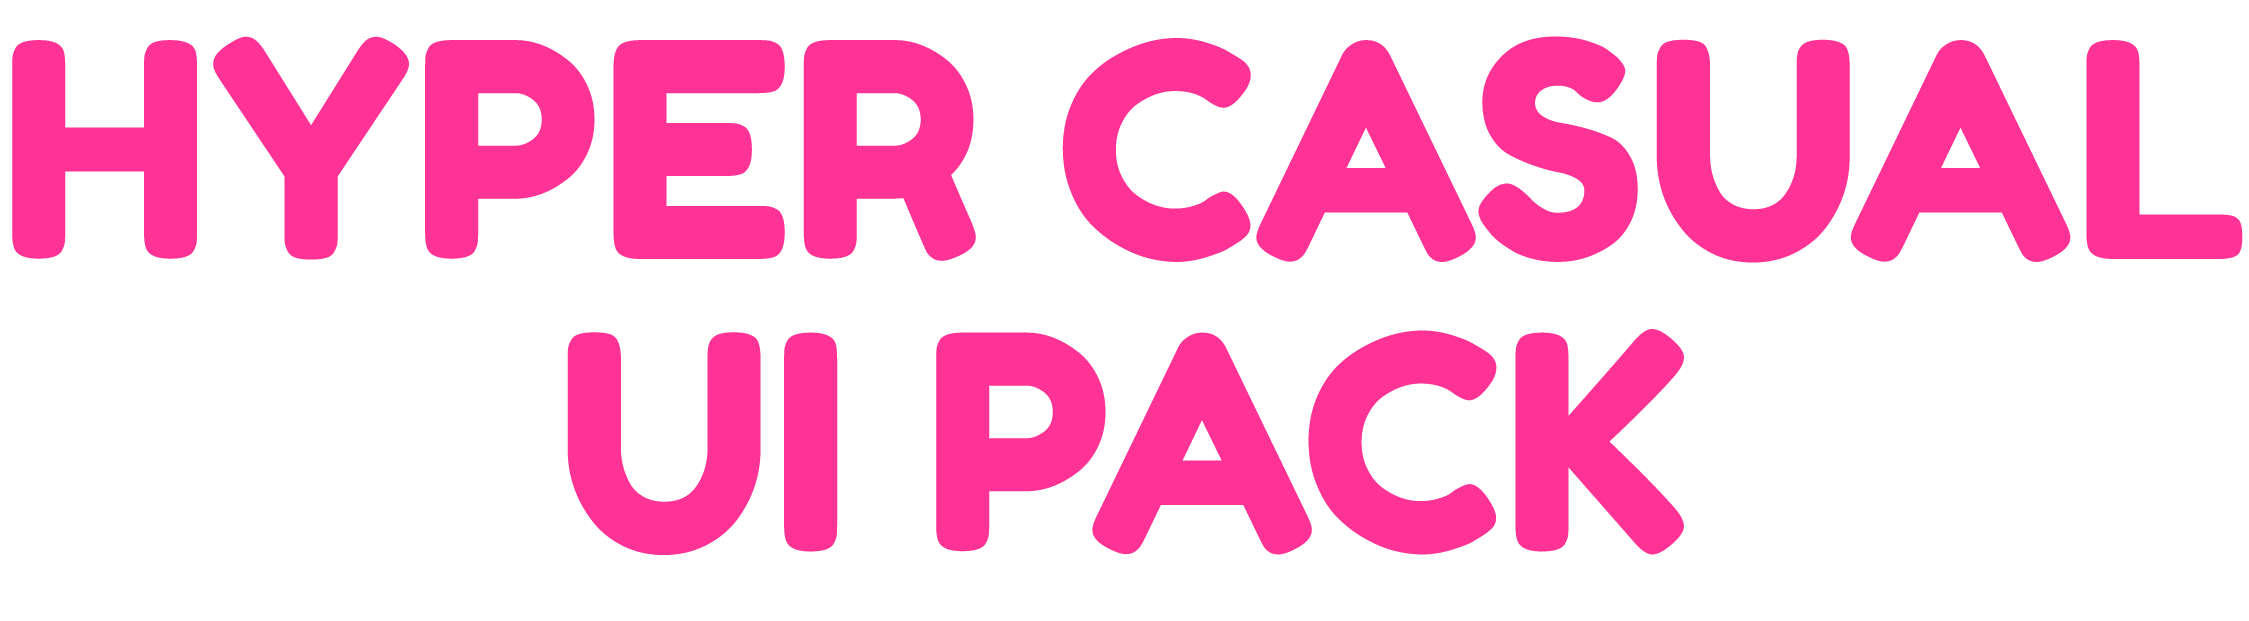 Hyper Casual UI Pack